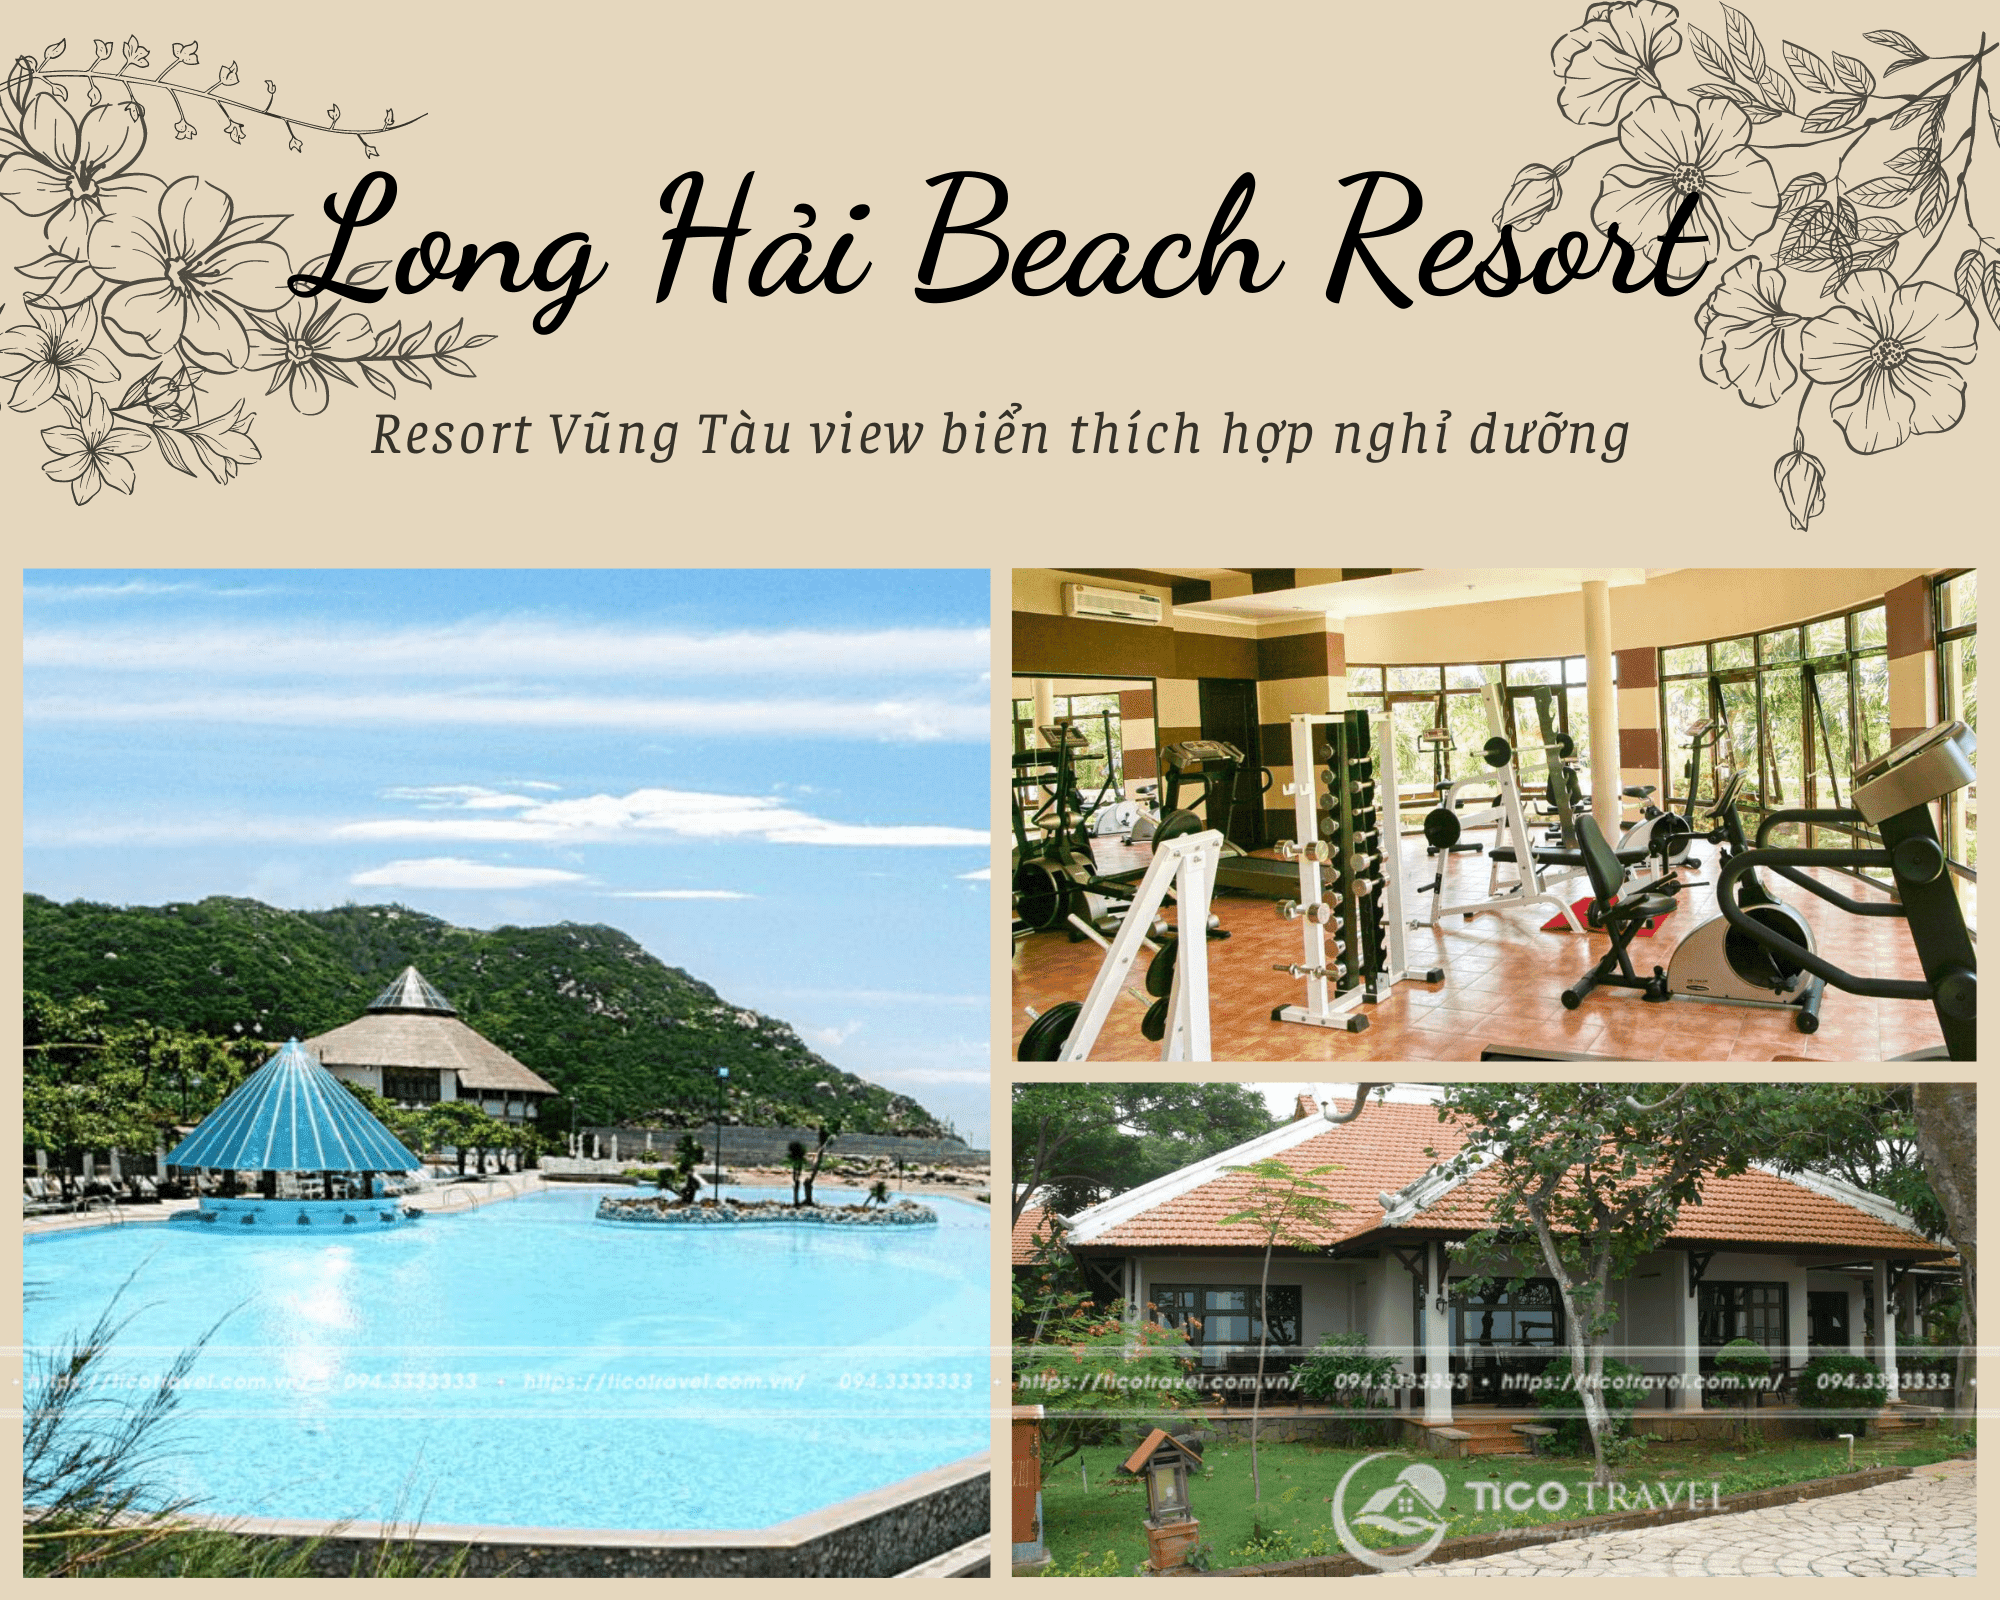 Resort Vũng Tàu view biển đẹp thích hợp nghỉ dưỡng